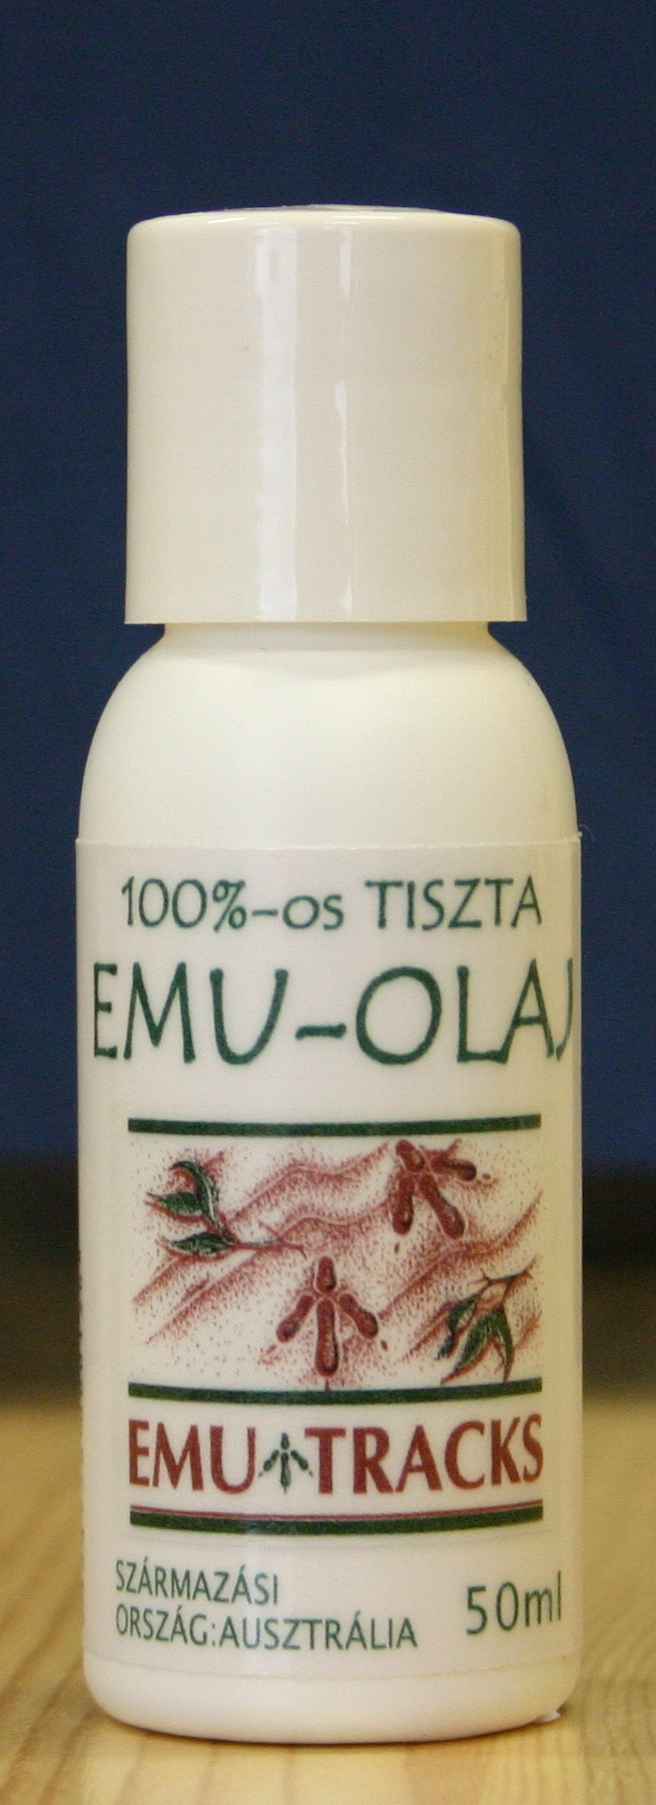 Emu olaj gyógyszer tulajdonságait, ellenjavallatok, receptek